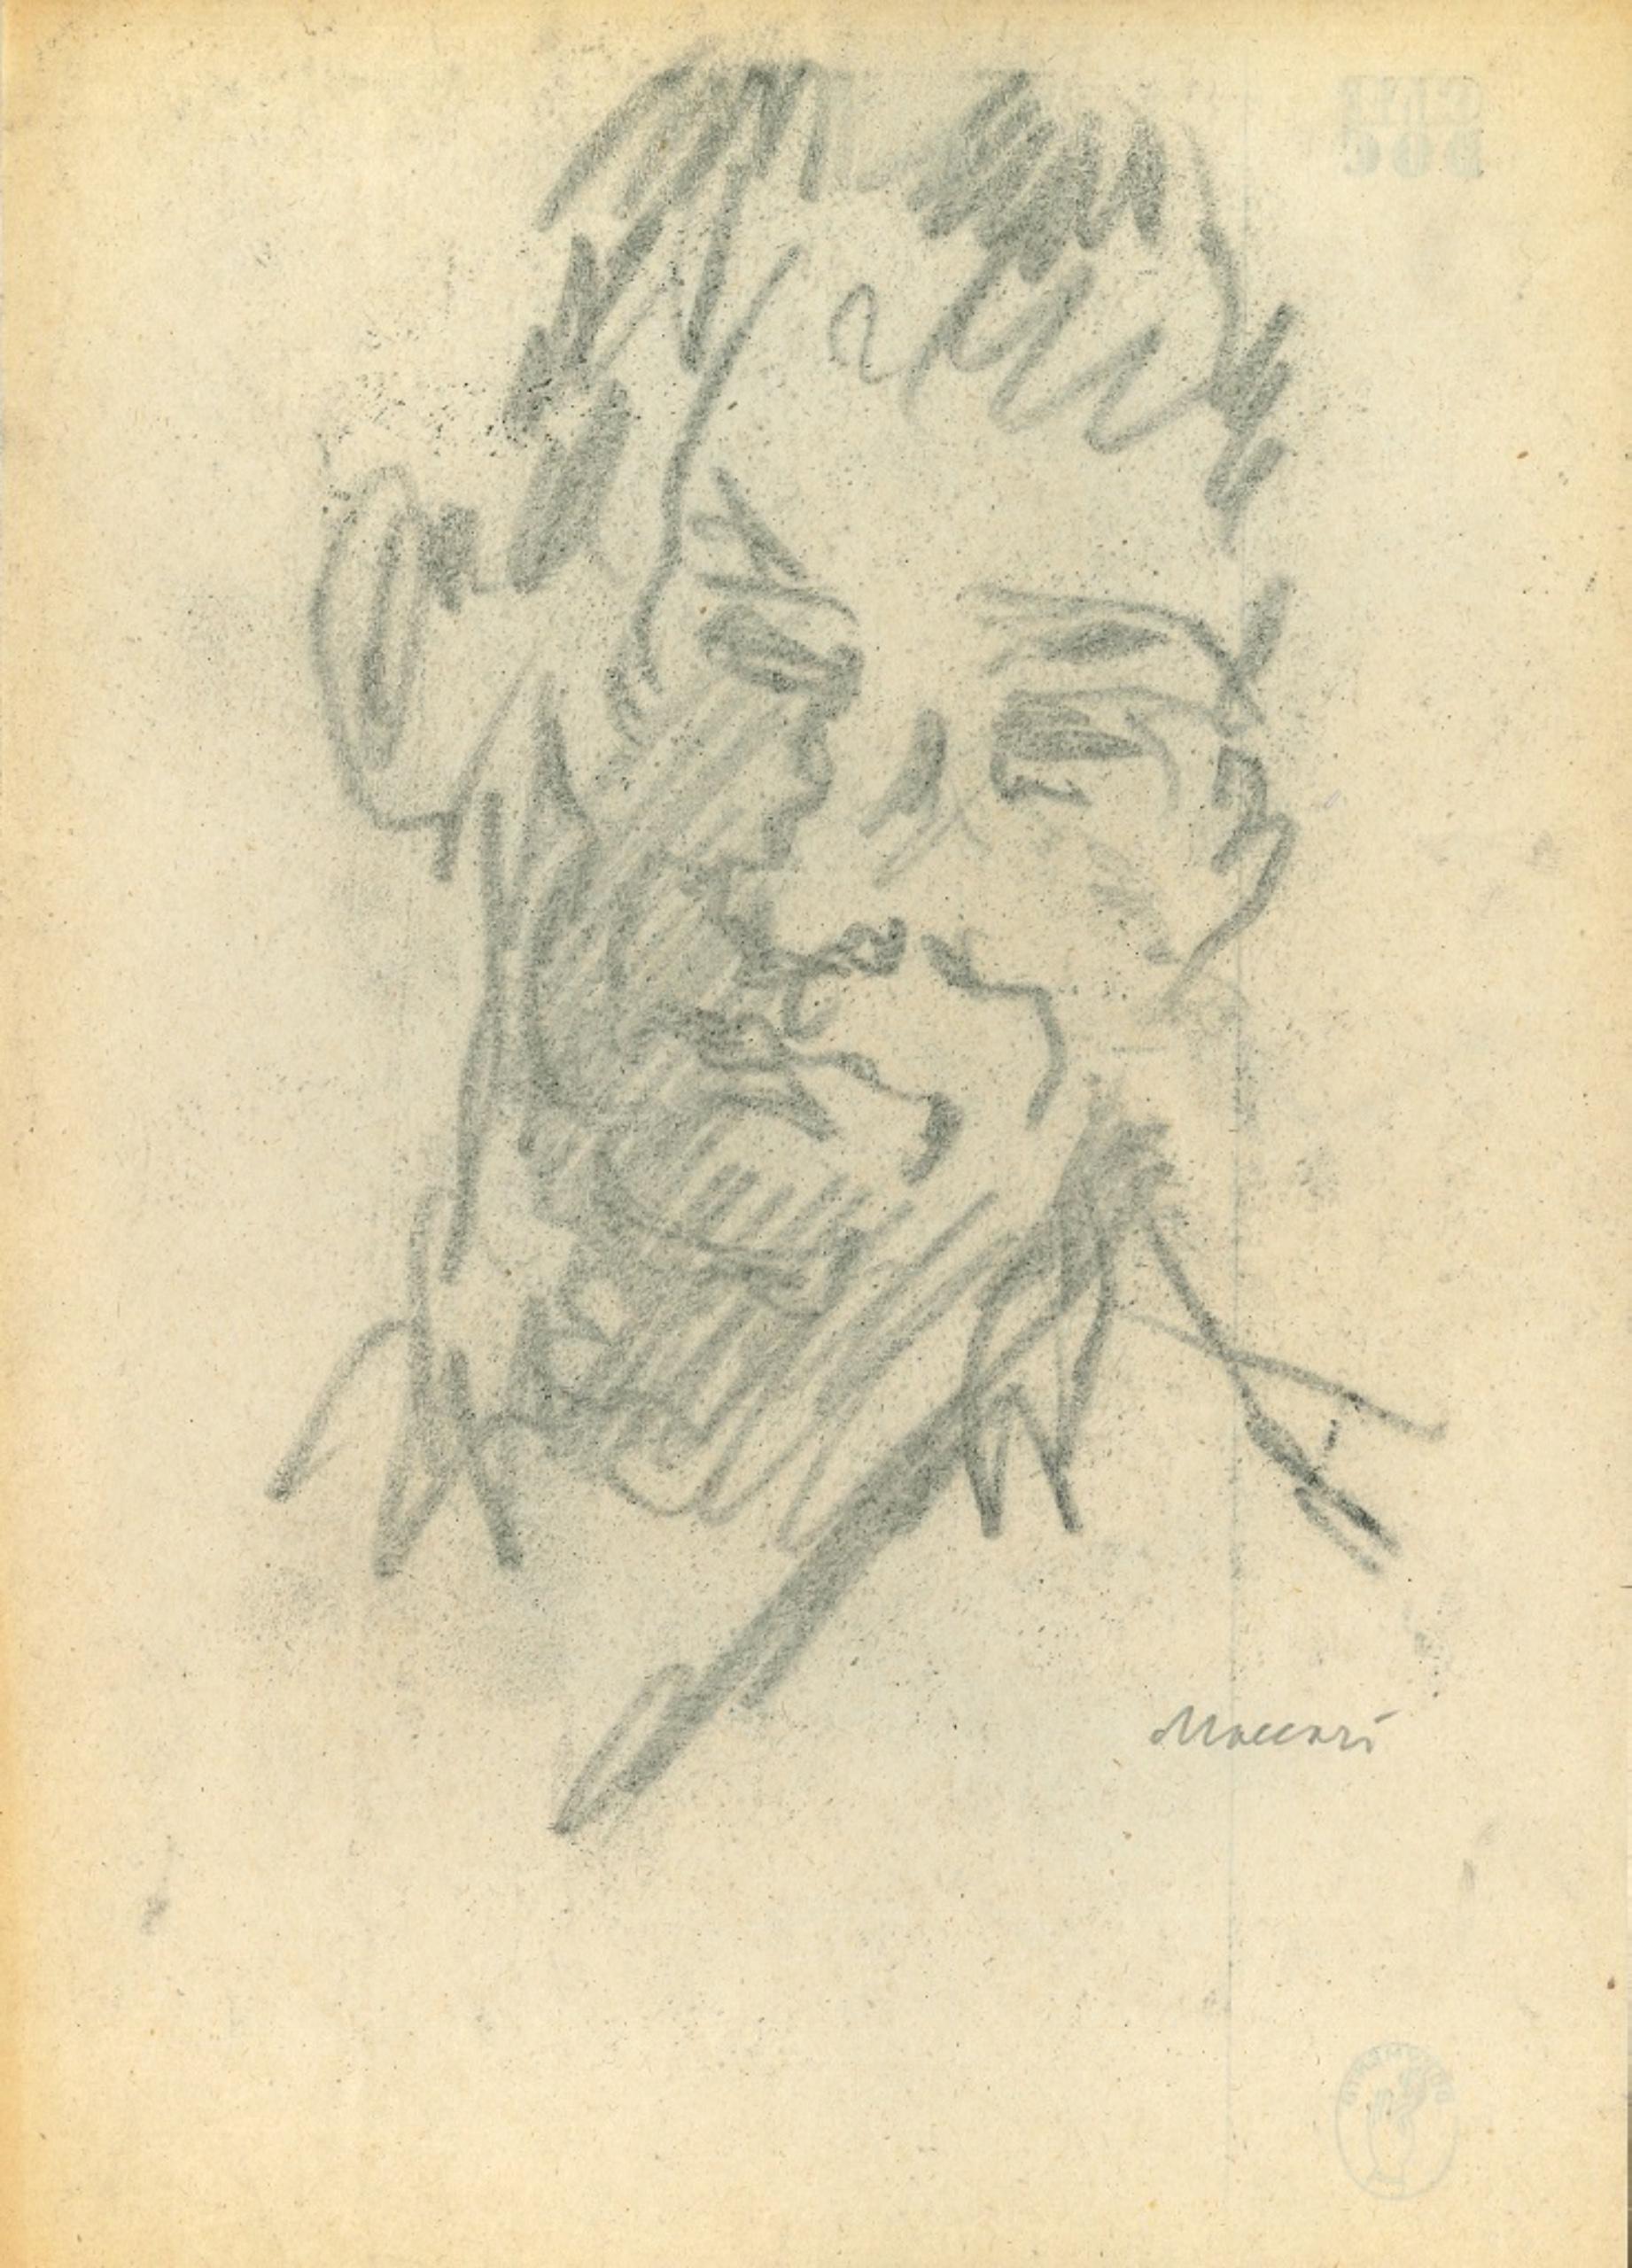 Portrait esquissé est un dessin original sur papier, réalisé vers les années soixante-dix par le grand artiste et journaliste italien, Mino Maccari (Sienne, 1898 - 1989).

Fusain sur papier de couleur ivoire.

Signé "Maccari" au crayon dans la marge